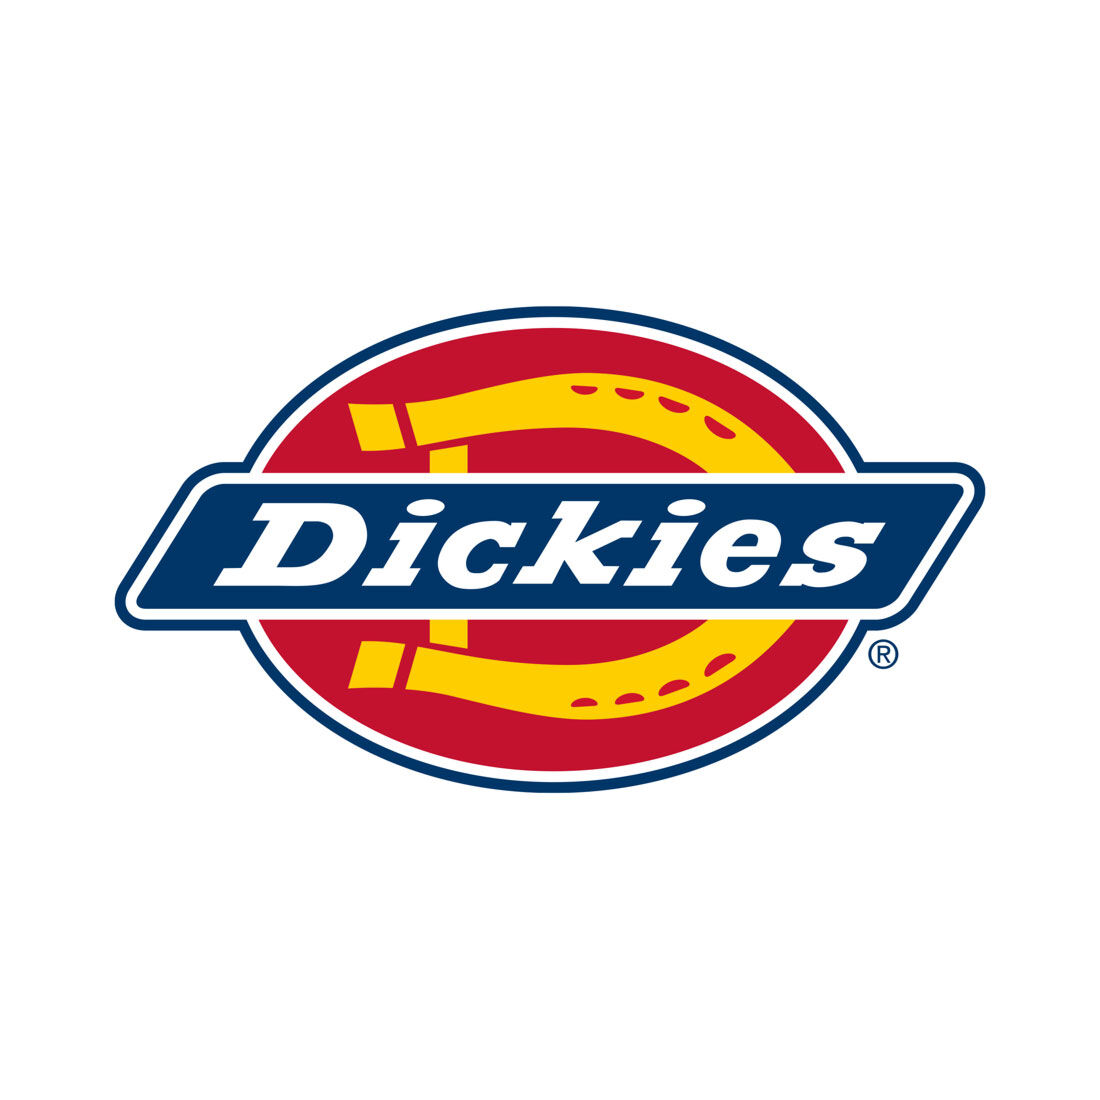 Dickies Premium Leather Look & Suede Steering Wheel Cover Black 380mm Diameter, , scaau_hi-res